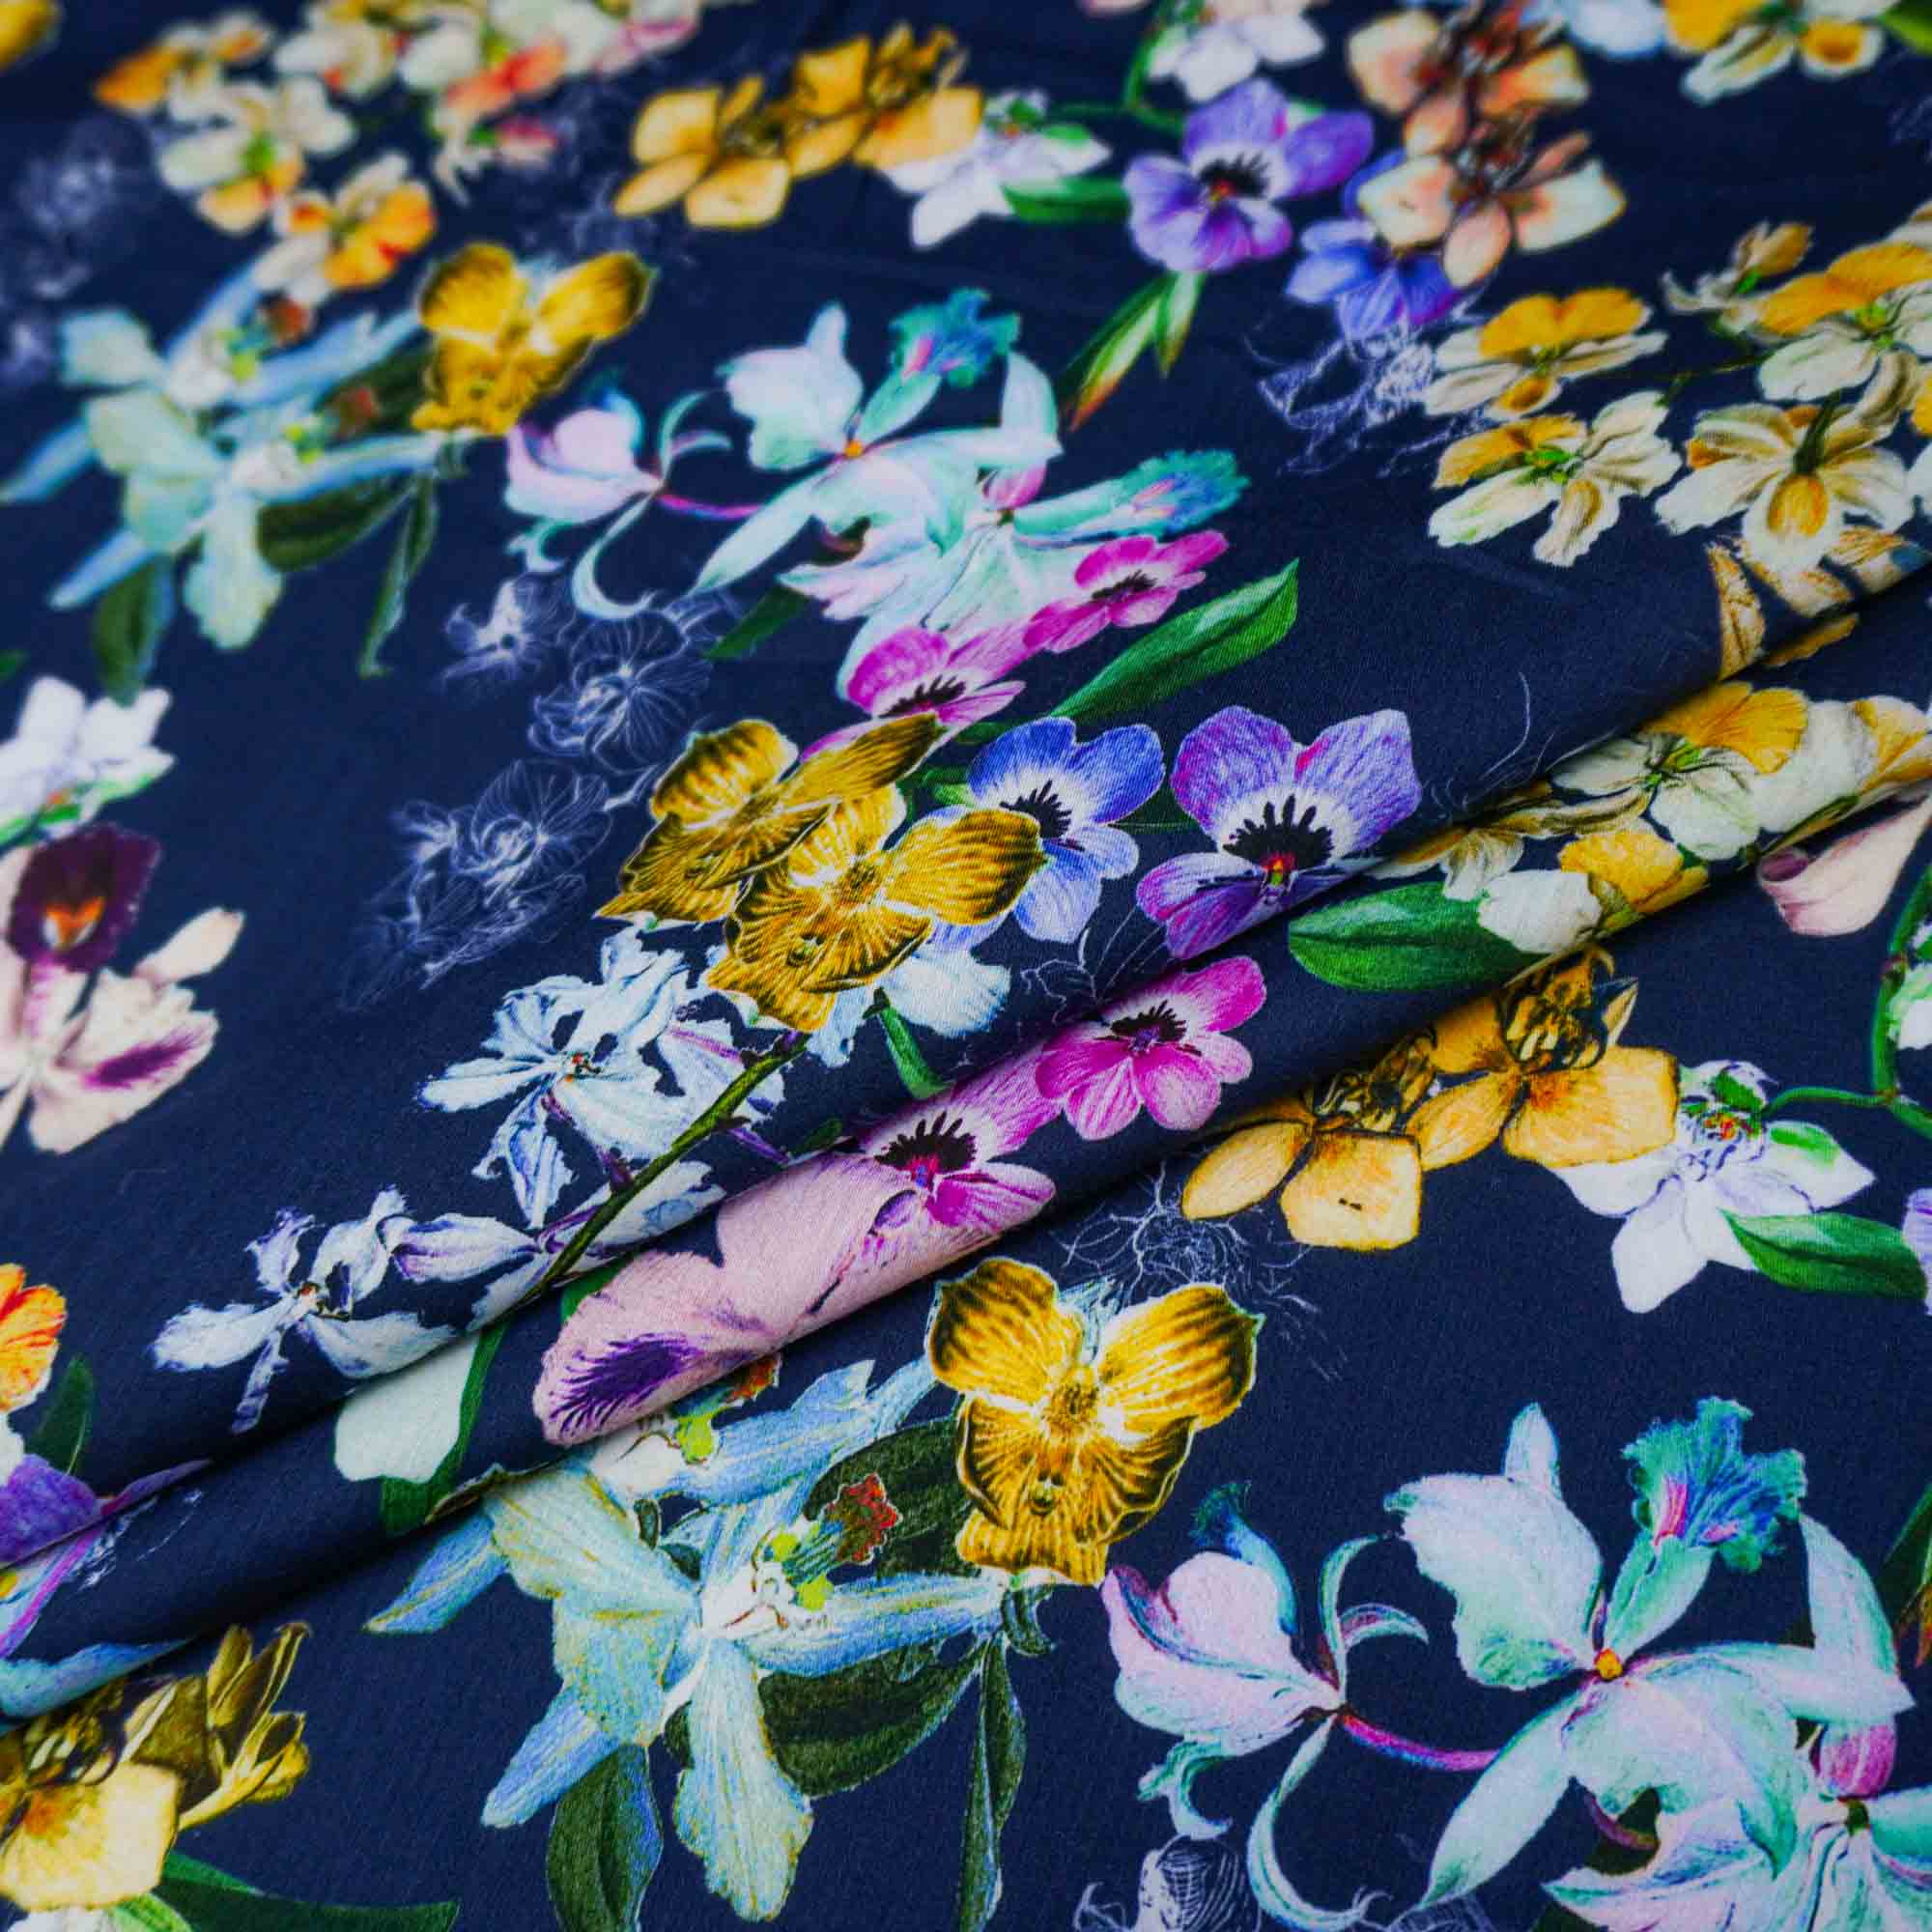 Tecido cambraia de algodão puro azul marinho estampado floral (tecido italiano legítimo)